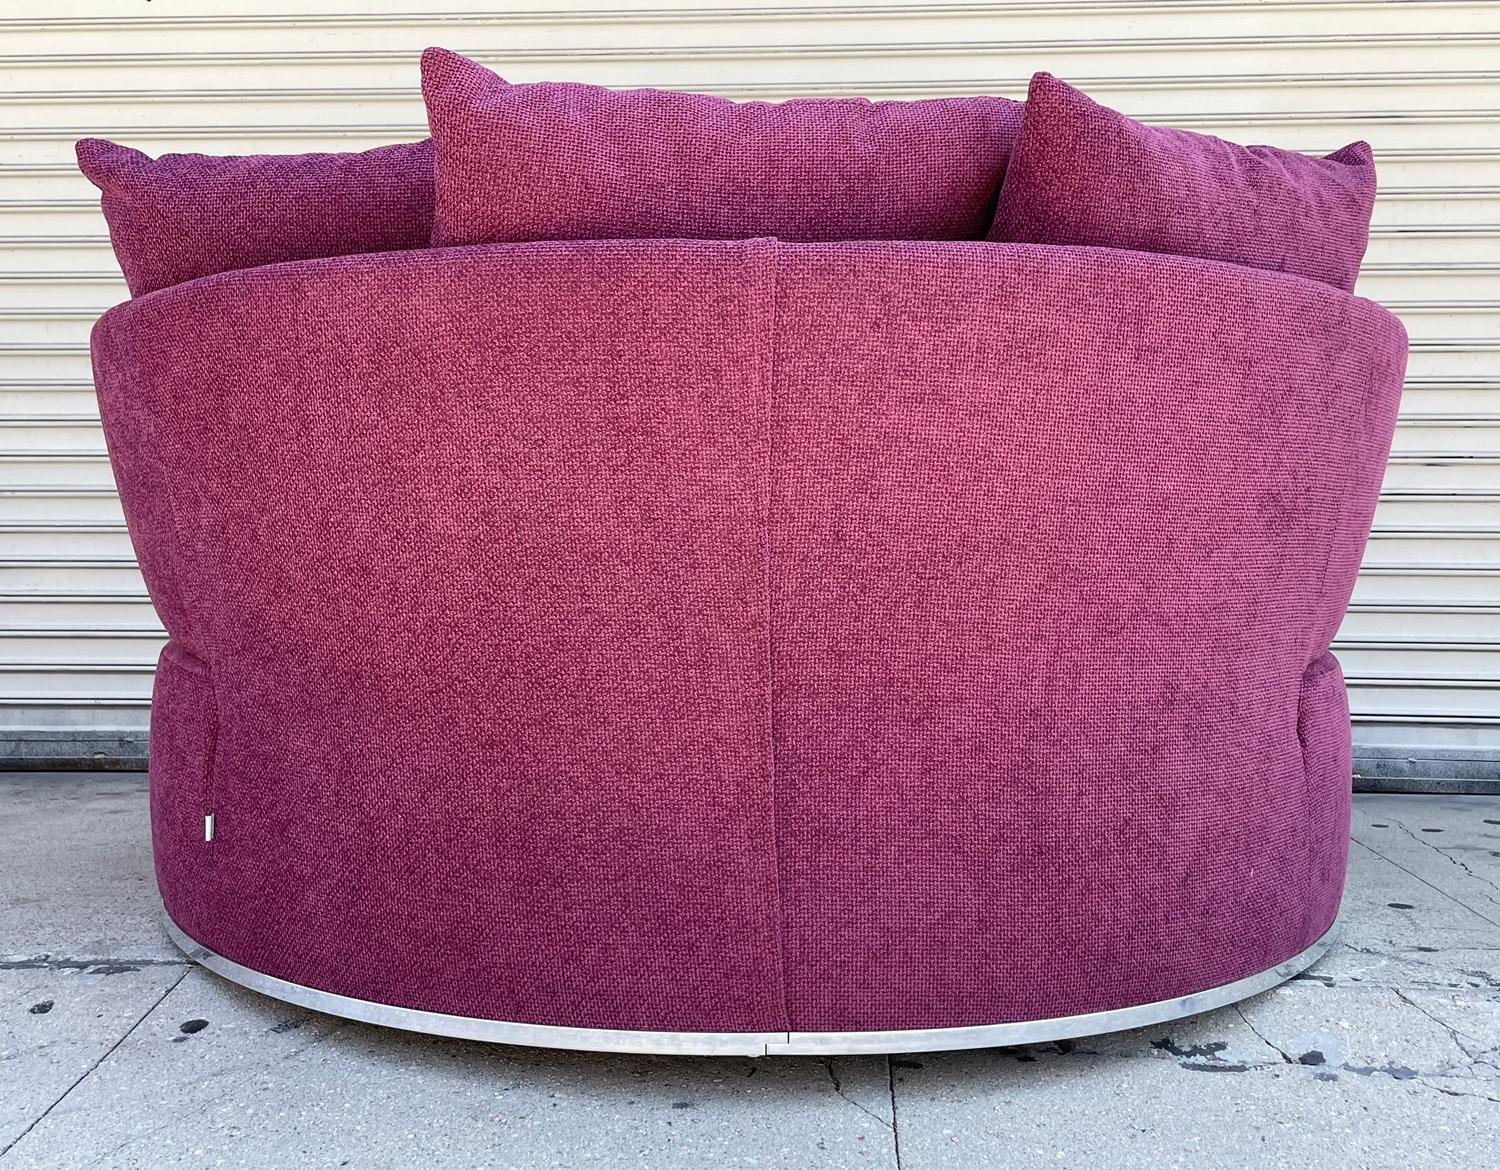 Aluminum Amoenus Circular/Swivel Sofa by Antonio Citterio for B&B Italia